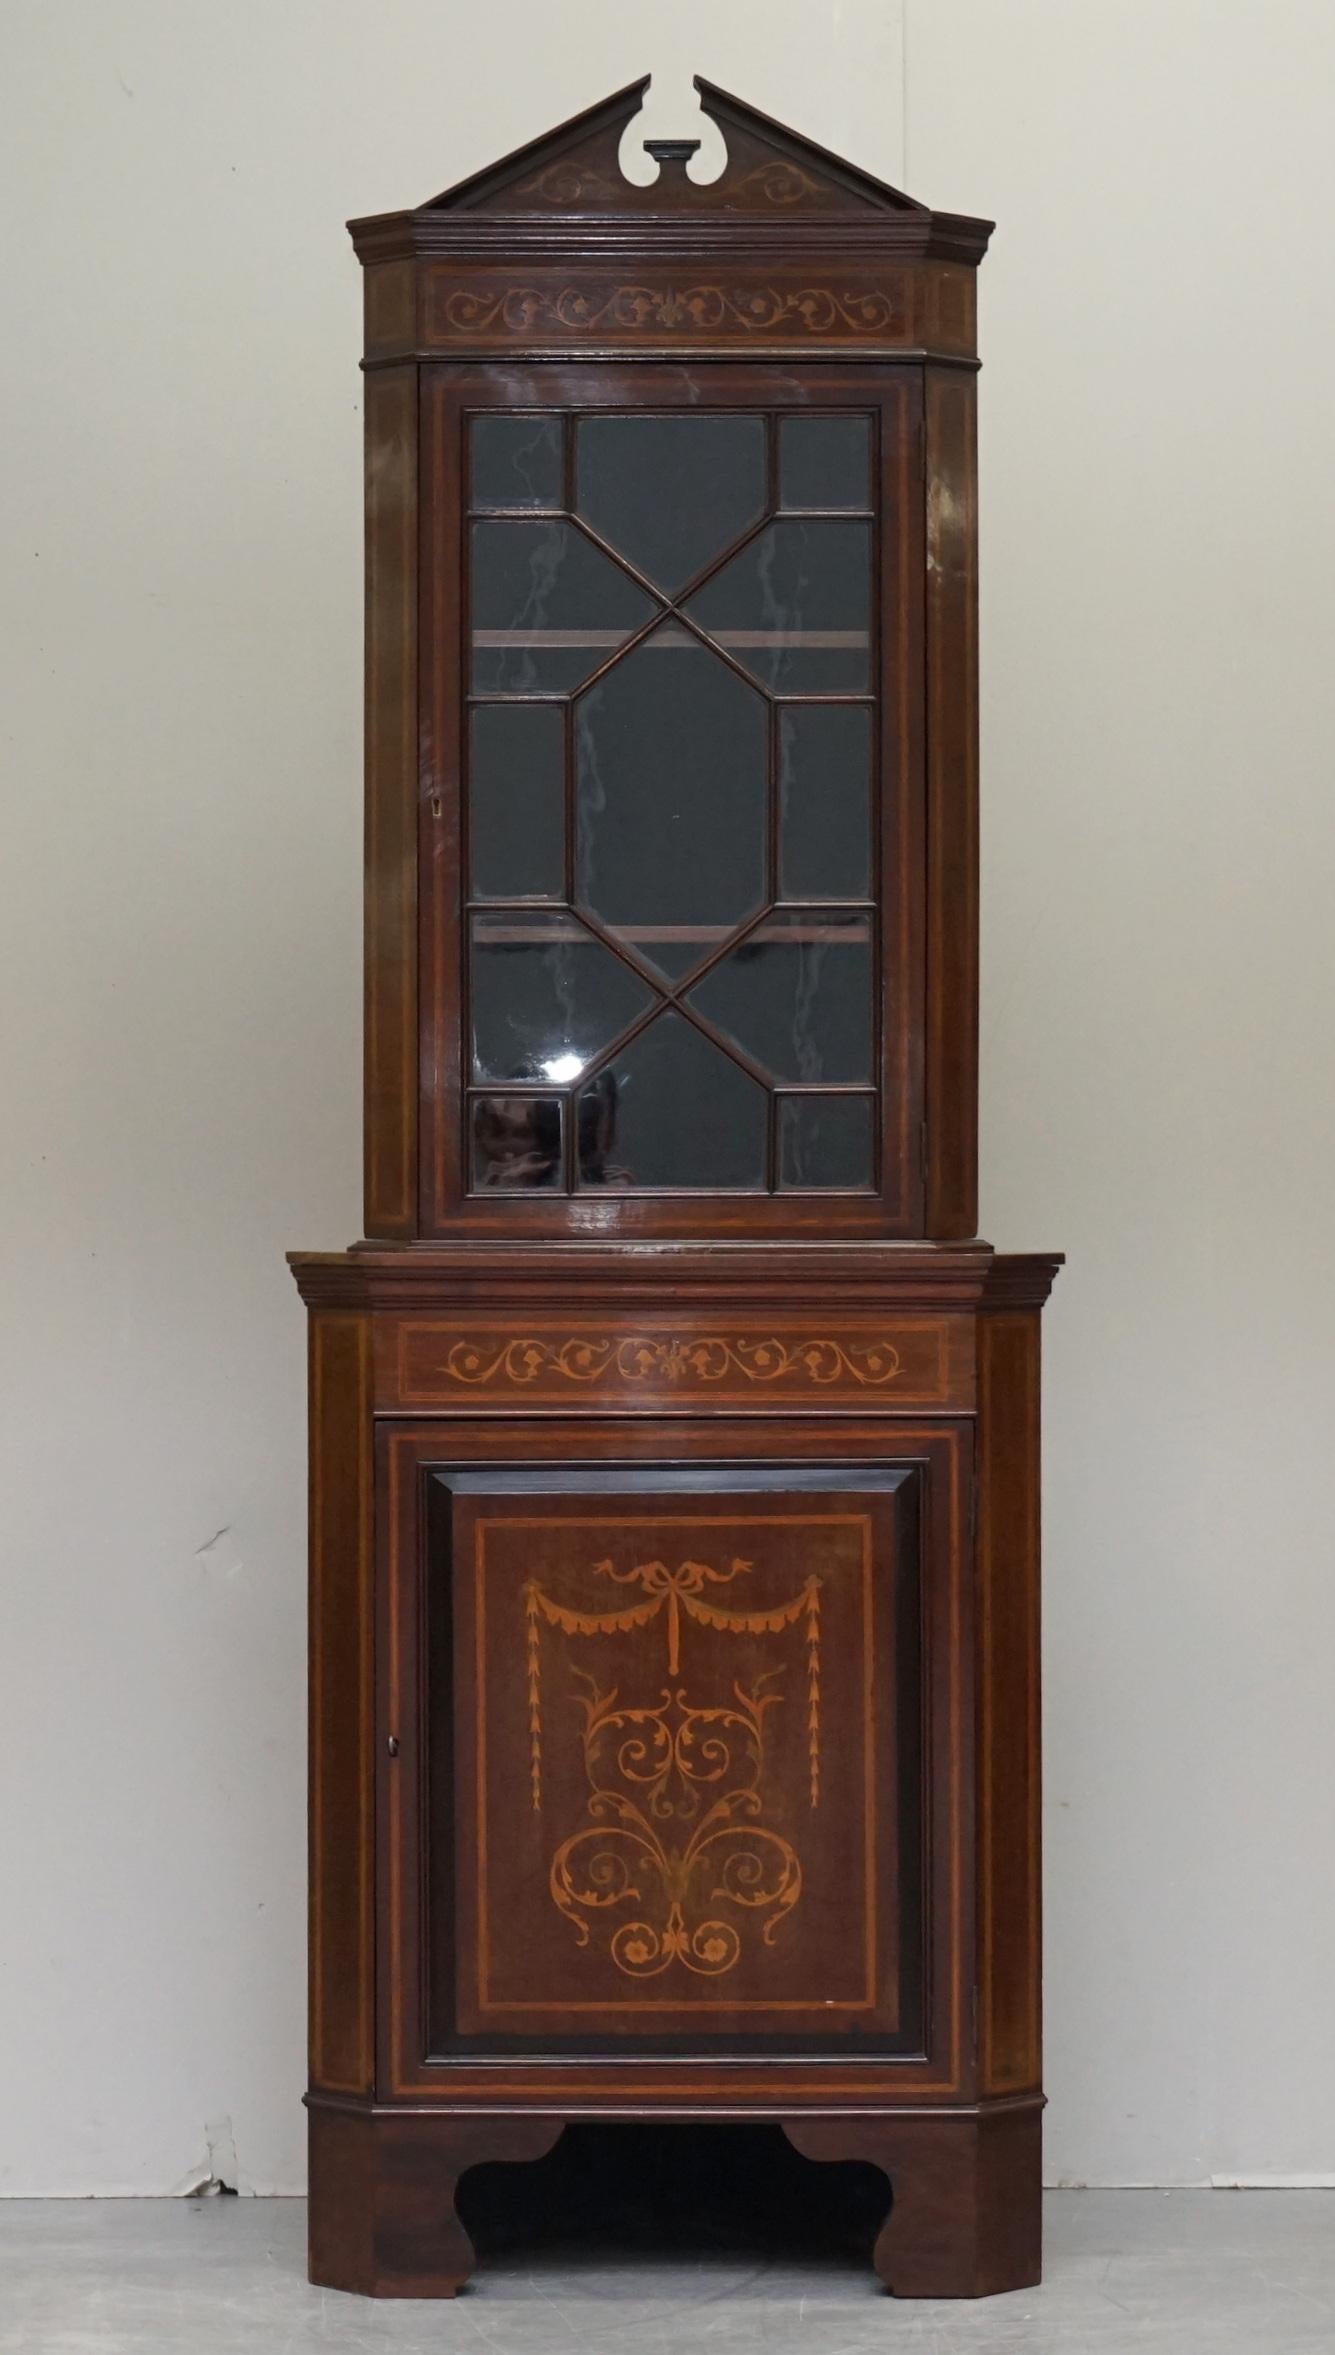 
Wimbledon-Furniture freut sich, dieses schöne antike viktorianische Bücherregal aus dem 19. Jahrhundert mit holländischen Intarsien aus Nussbaum mit Astralglasur zum Verkauf anzubieten.

Bitte beachten Sie die Liefergebühr aufgeführt ist nur ein